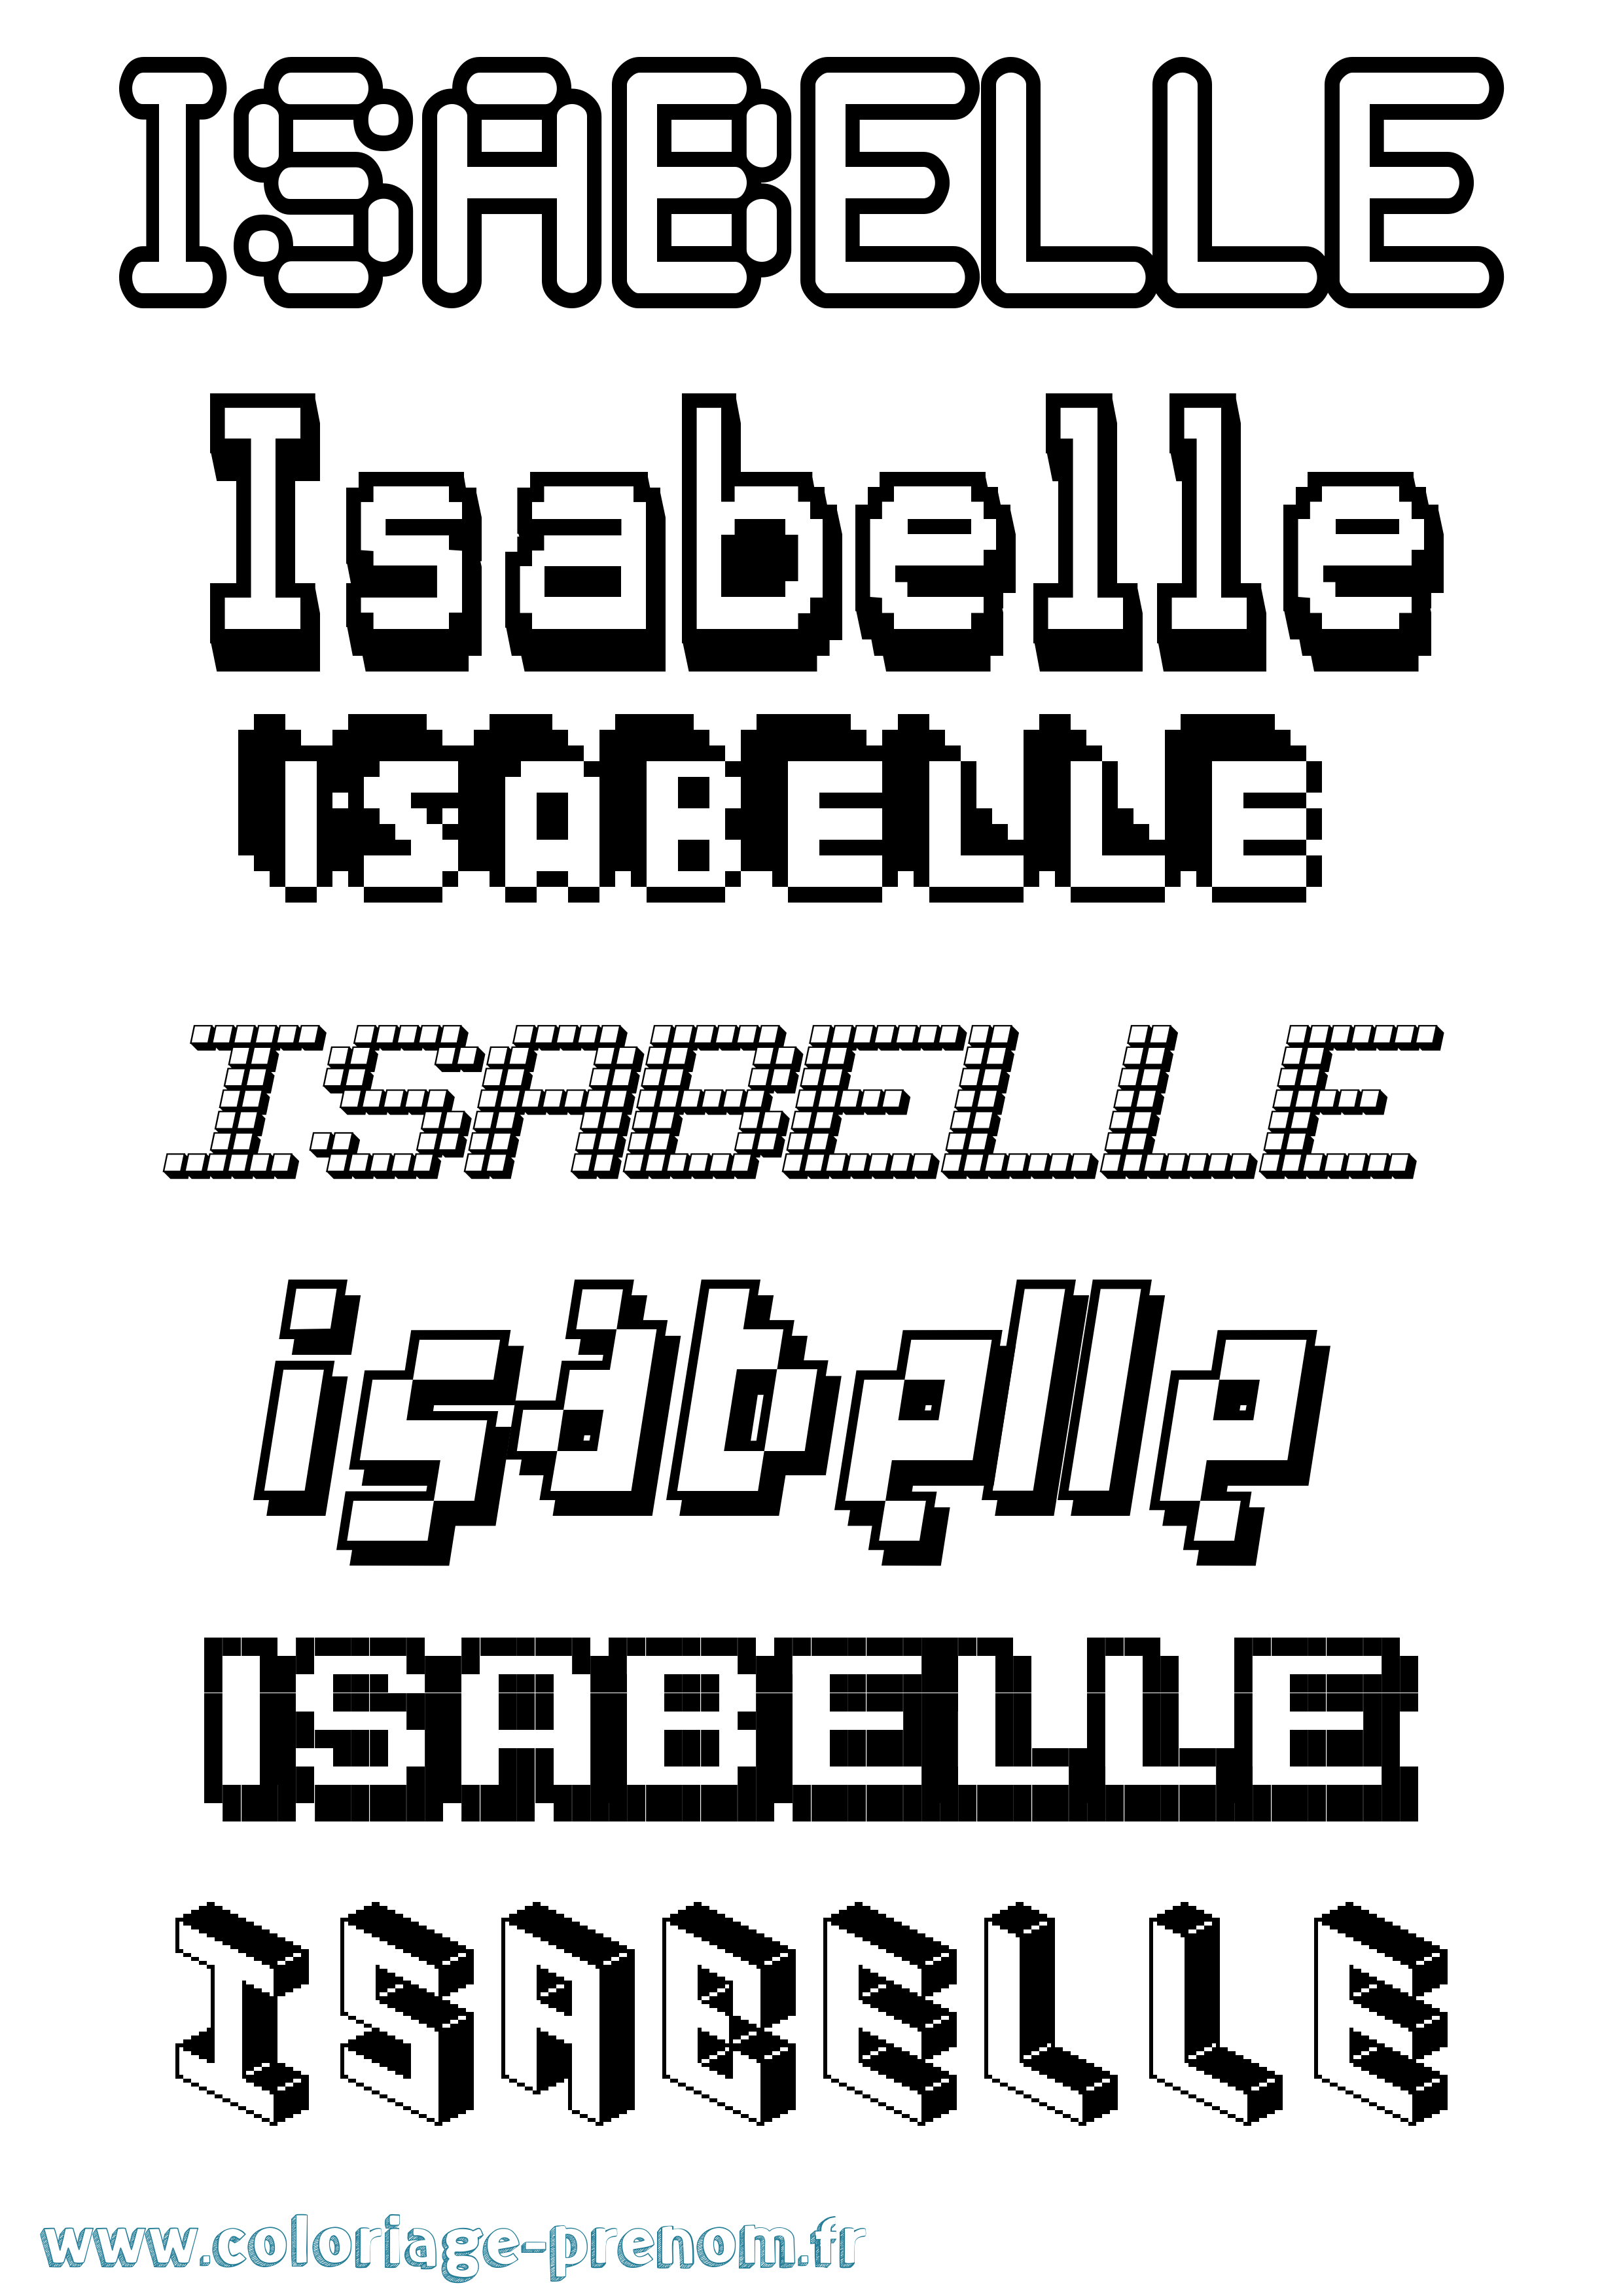 Coloriage prénom Isabelle Pixel